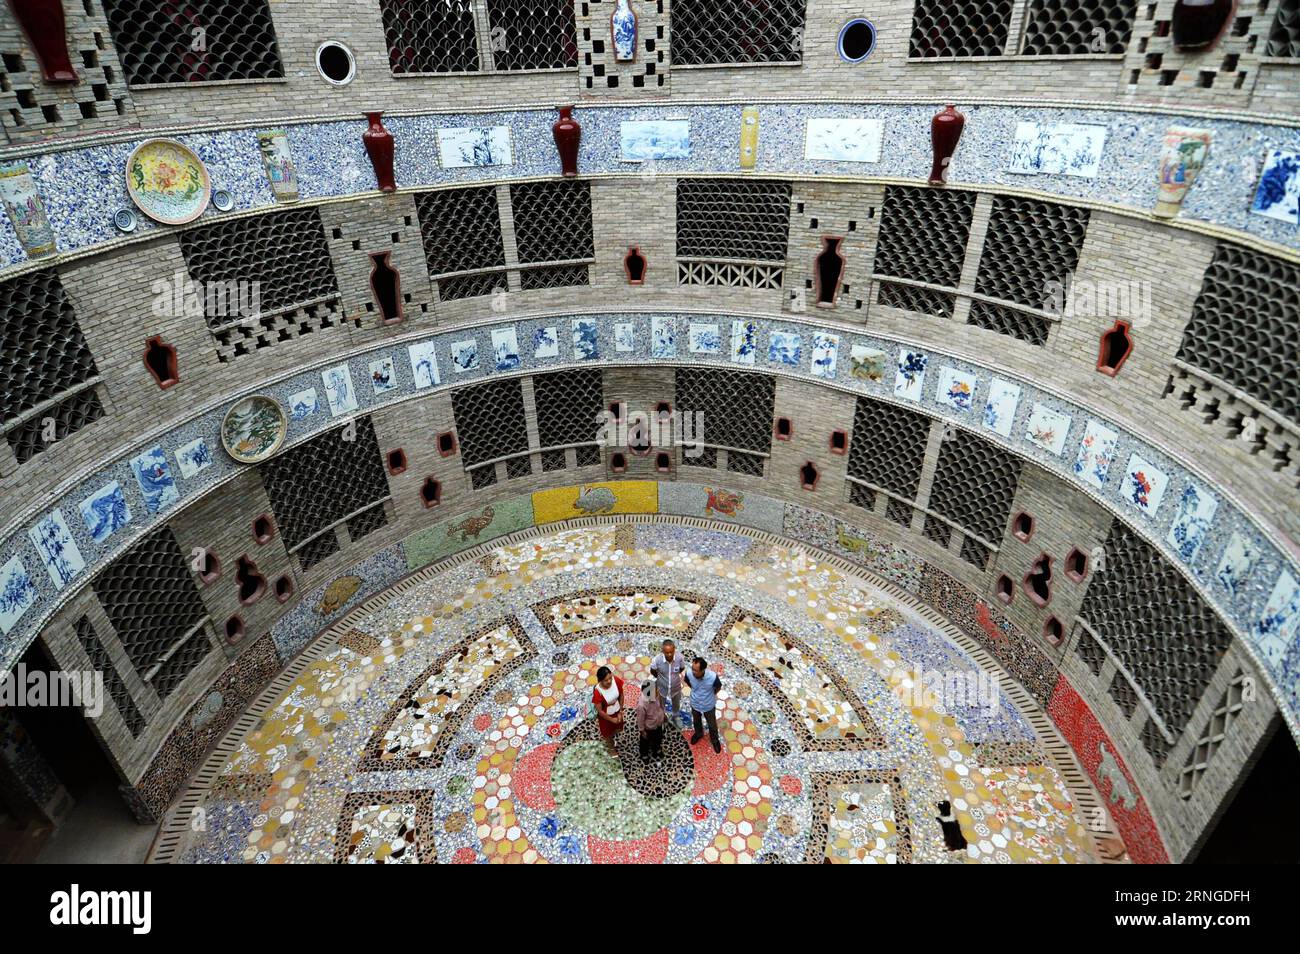 (160922) -- NANCHANG, 21 septembre 2016 -- Yu Ermei présente son palais procelain aux touristes dans le village de Xinping du comté de Fuliang à Jingdezhen, province de Jiangxi, dans l'est de la Chine, le 21 septembre 2016. Le villageois de 86 ans Yu Ermei a passé cinq ans à construire ce palais de porcelaine. Le bâtiment circulaire de trois étages est décoré de plus de 60 000 pièces de porcelaine. (zkr) CHINA-JIANGXI-JINGDEZHEN-PORCELAINE PALACE (CN) WanxXiang PUBLICATIONxNOTxINxCHN Nanchang sept 21 2016 Yu présente son palais procesain aux touristes dans le village de Xinping du comté de Fuliang à Jingdezhen East China S Jiangxi Prov Banque D'Images